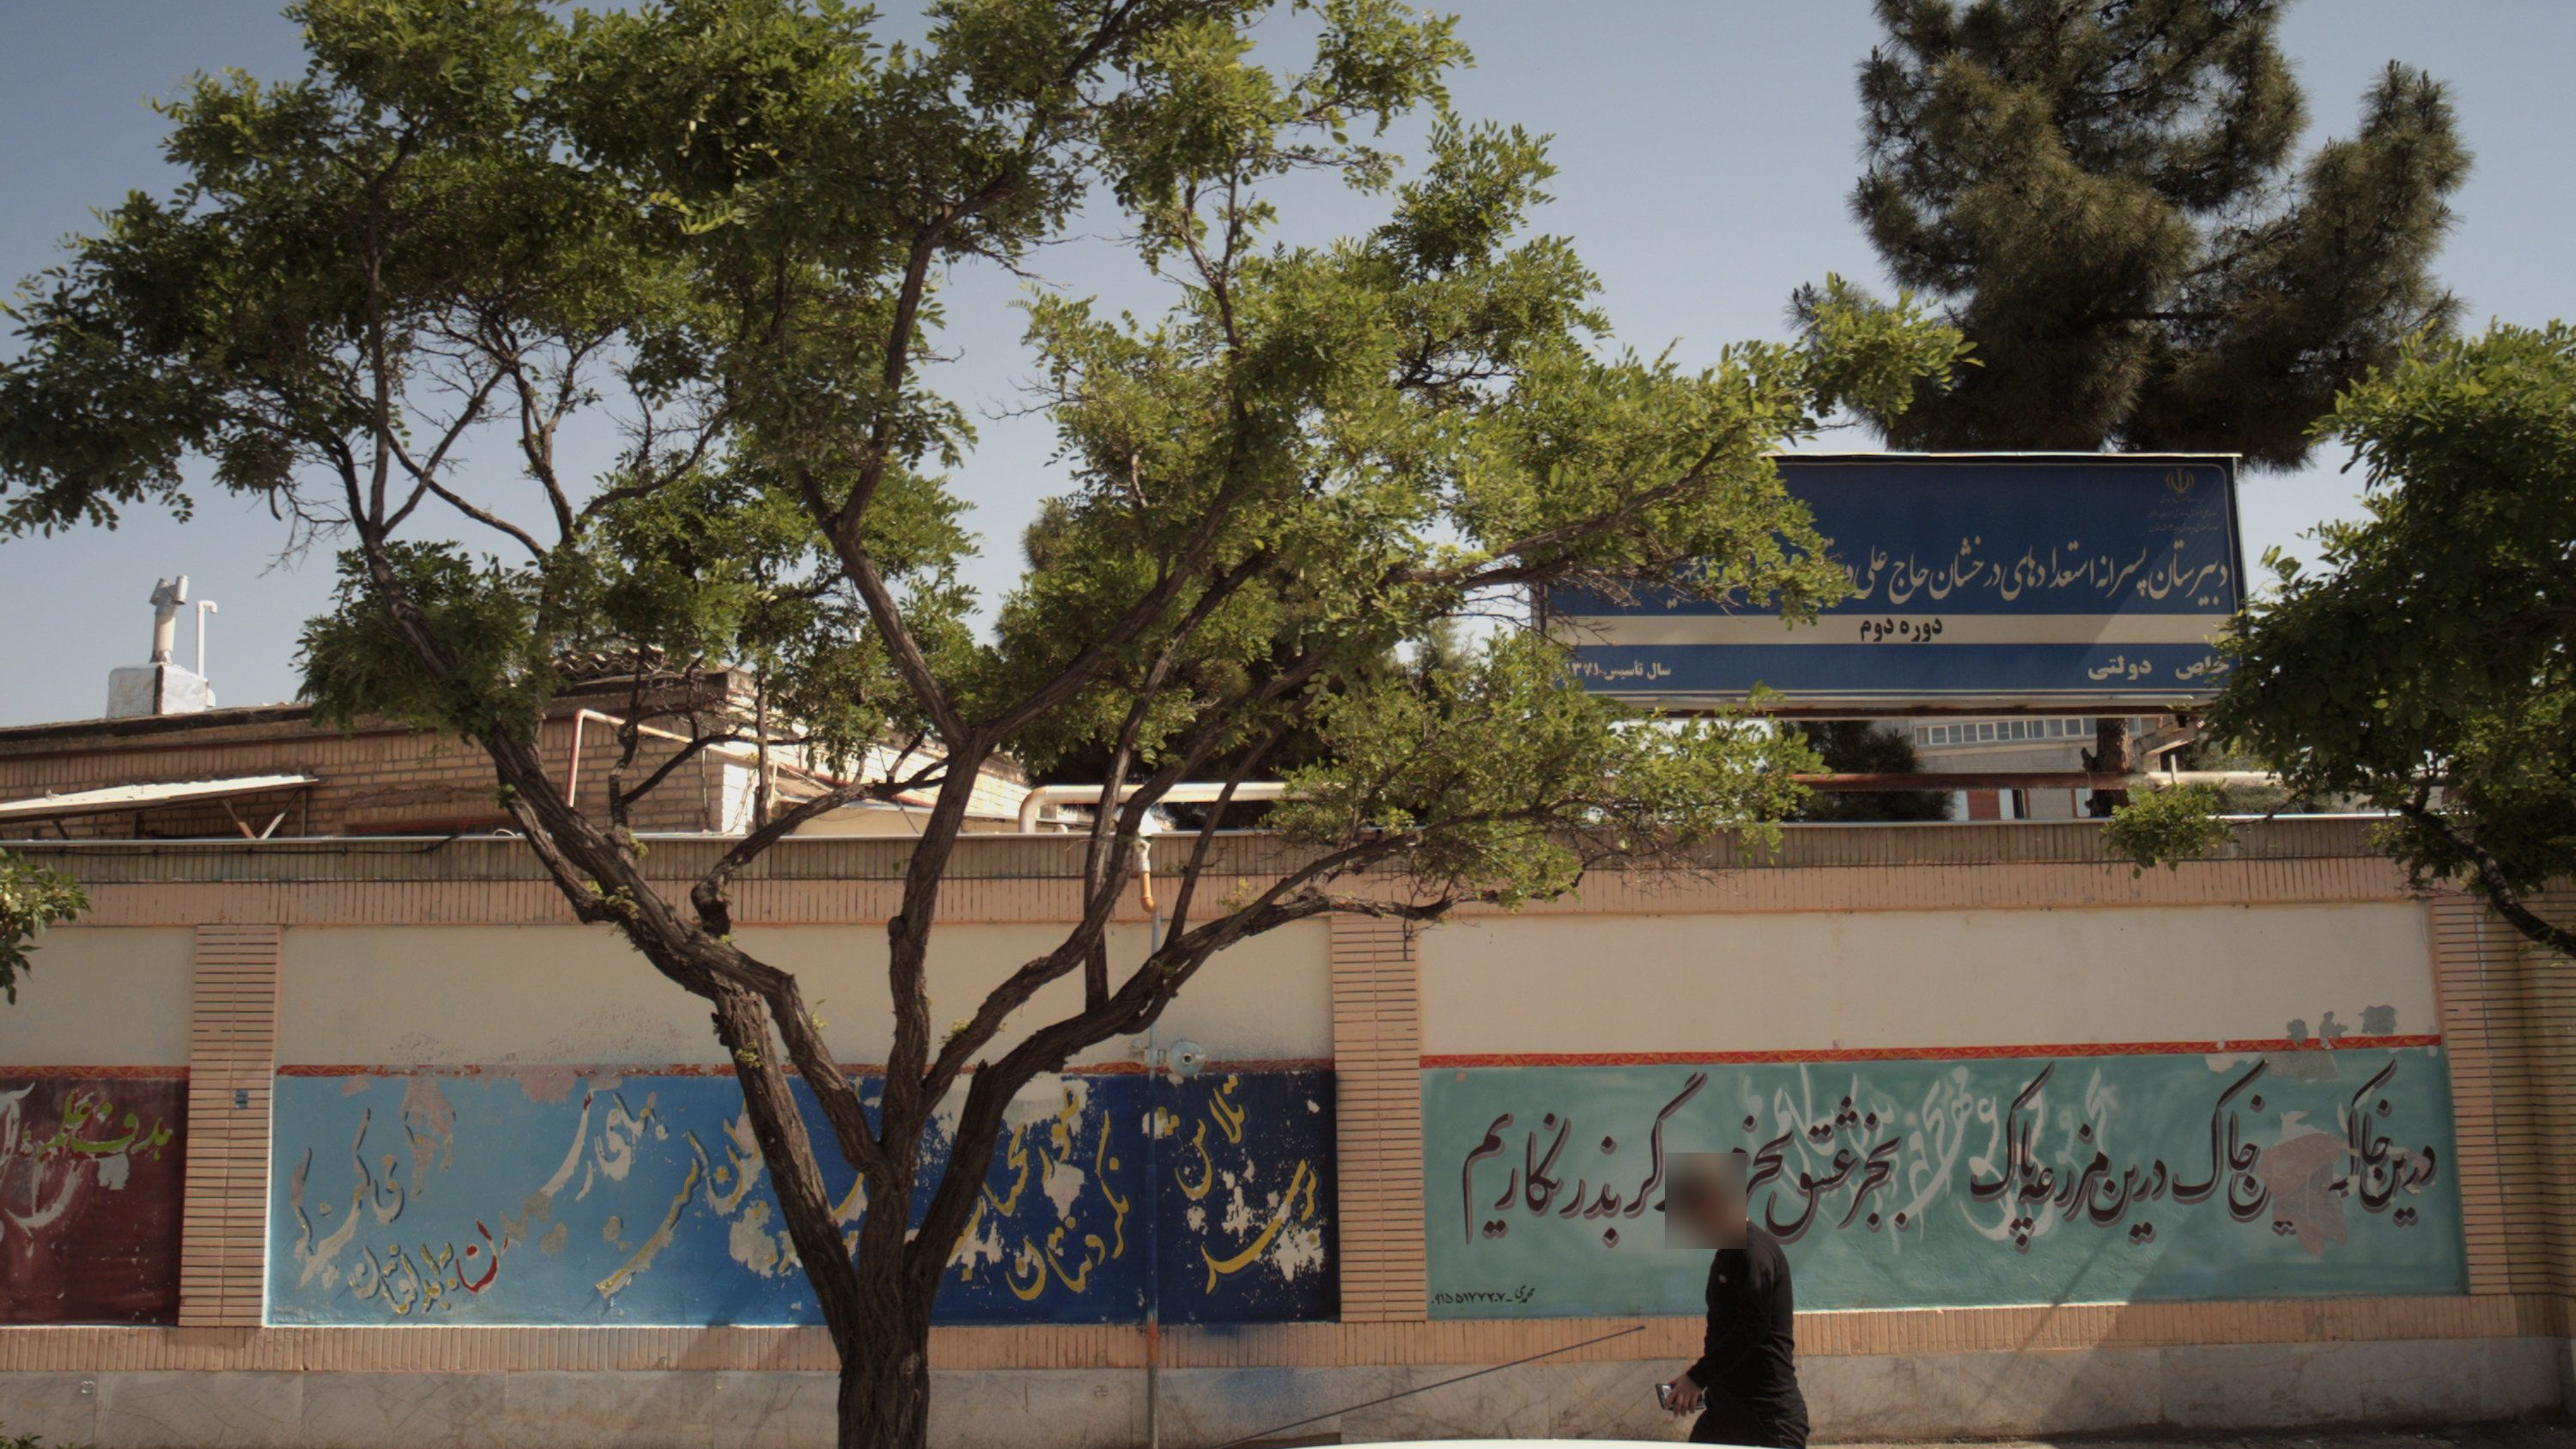 دبیرستان پسرانه استعدادهای درخشان حاج علی دهقان سفید سنگی